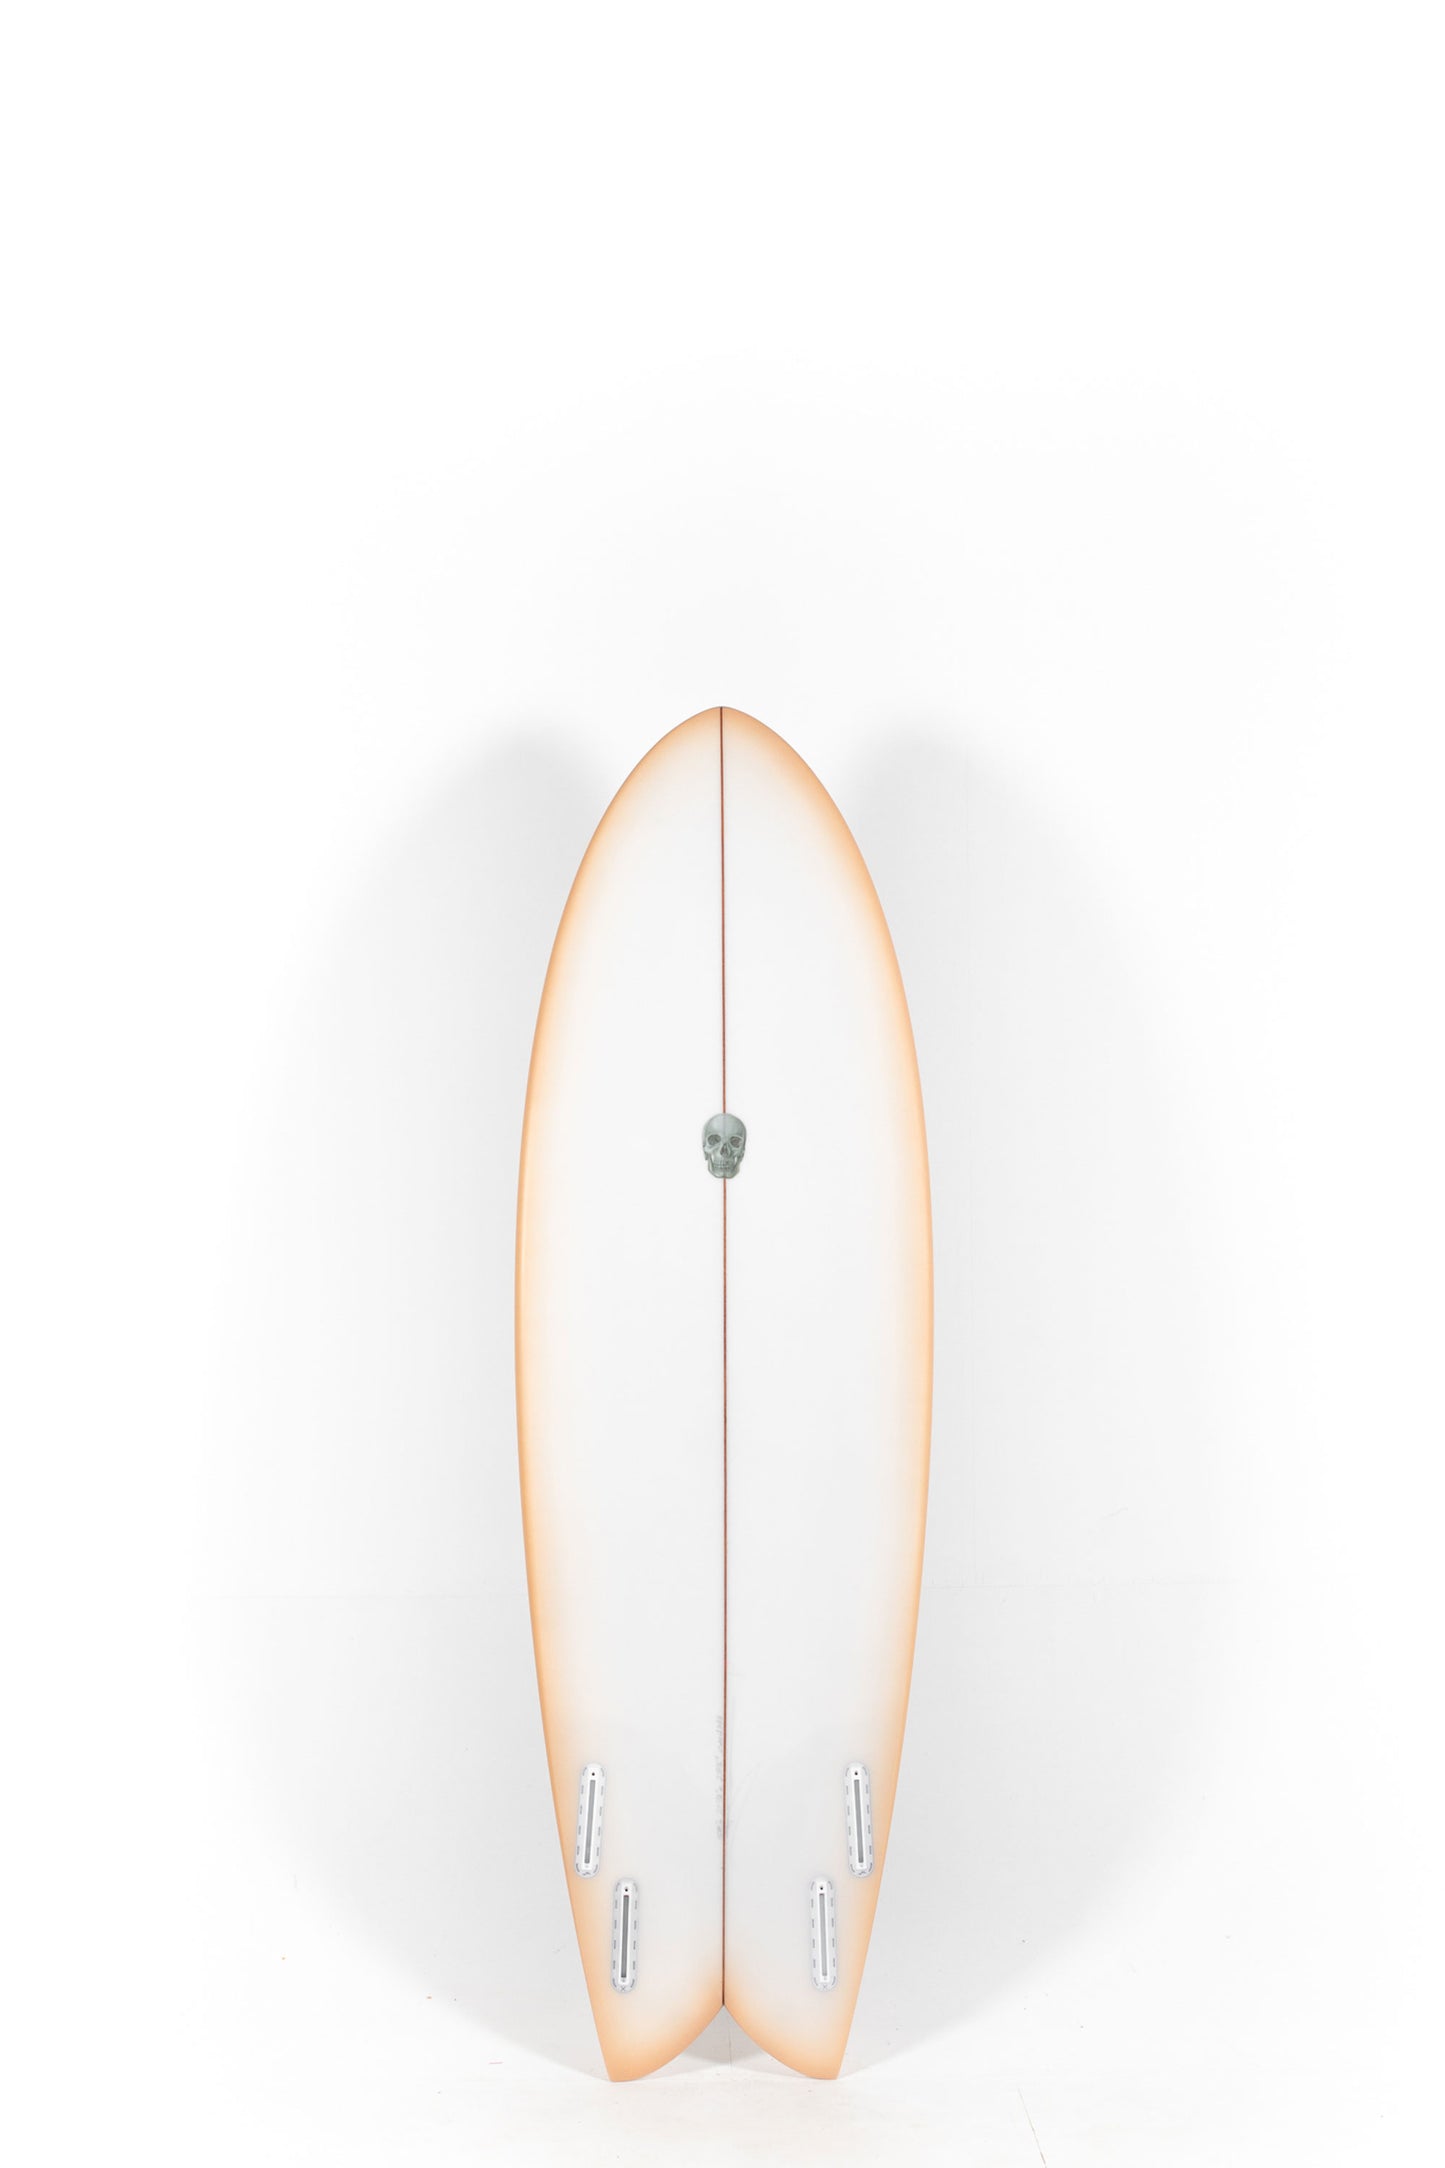 Pukas Surf Shop - Christenson Surfboards - MYCONAUT - 5'11" x 21 1/4 x 2 5/8 - CX04348